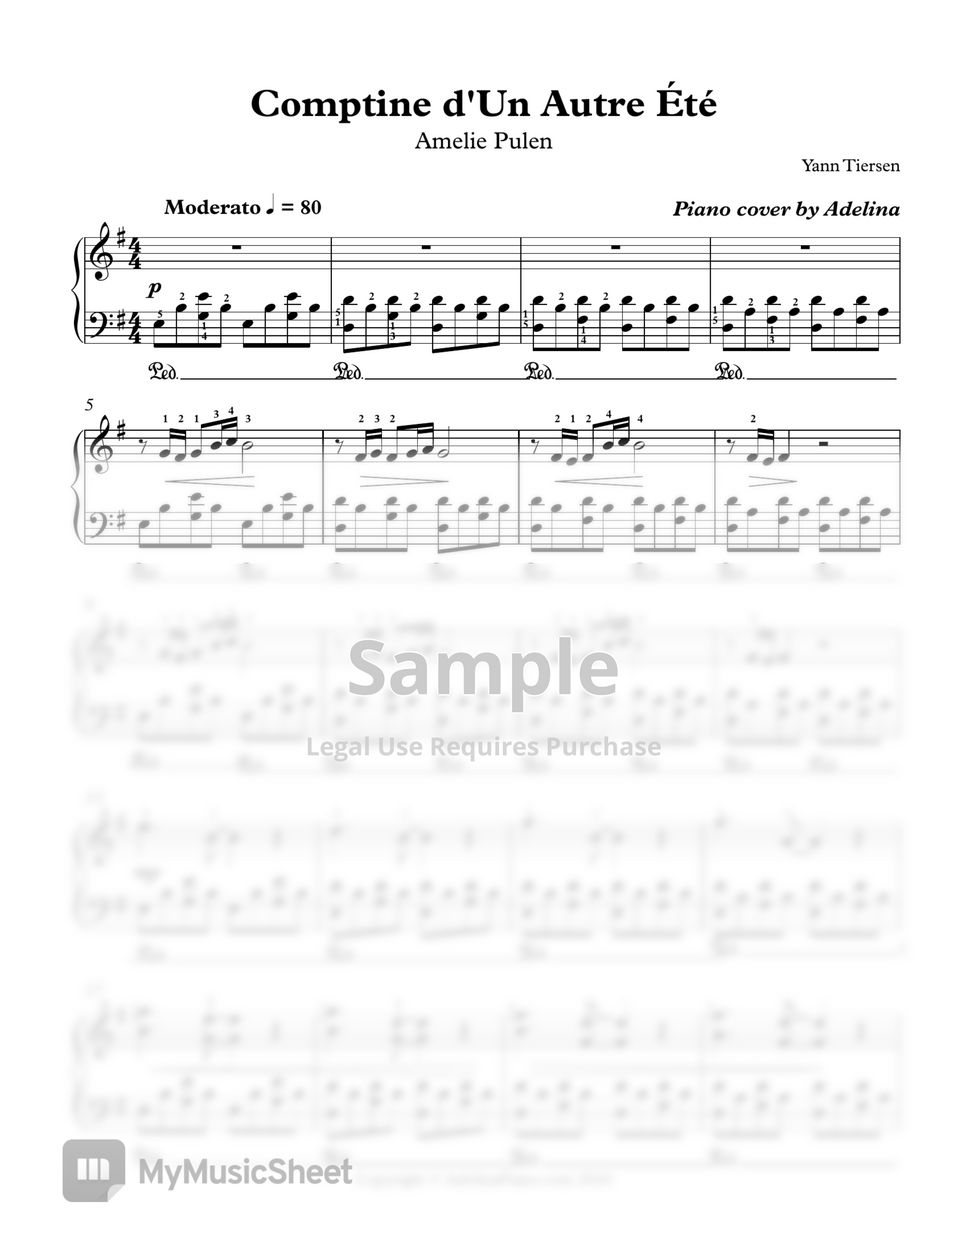 Yann Tiersen - Comptine d'un autre été by Adelina Piano